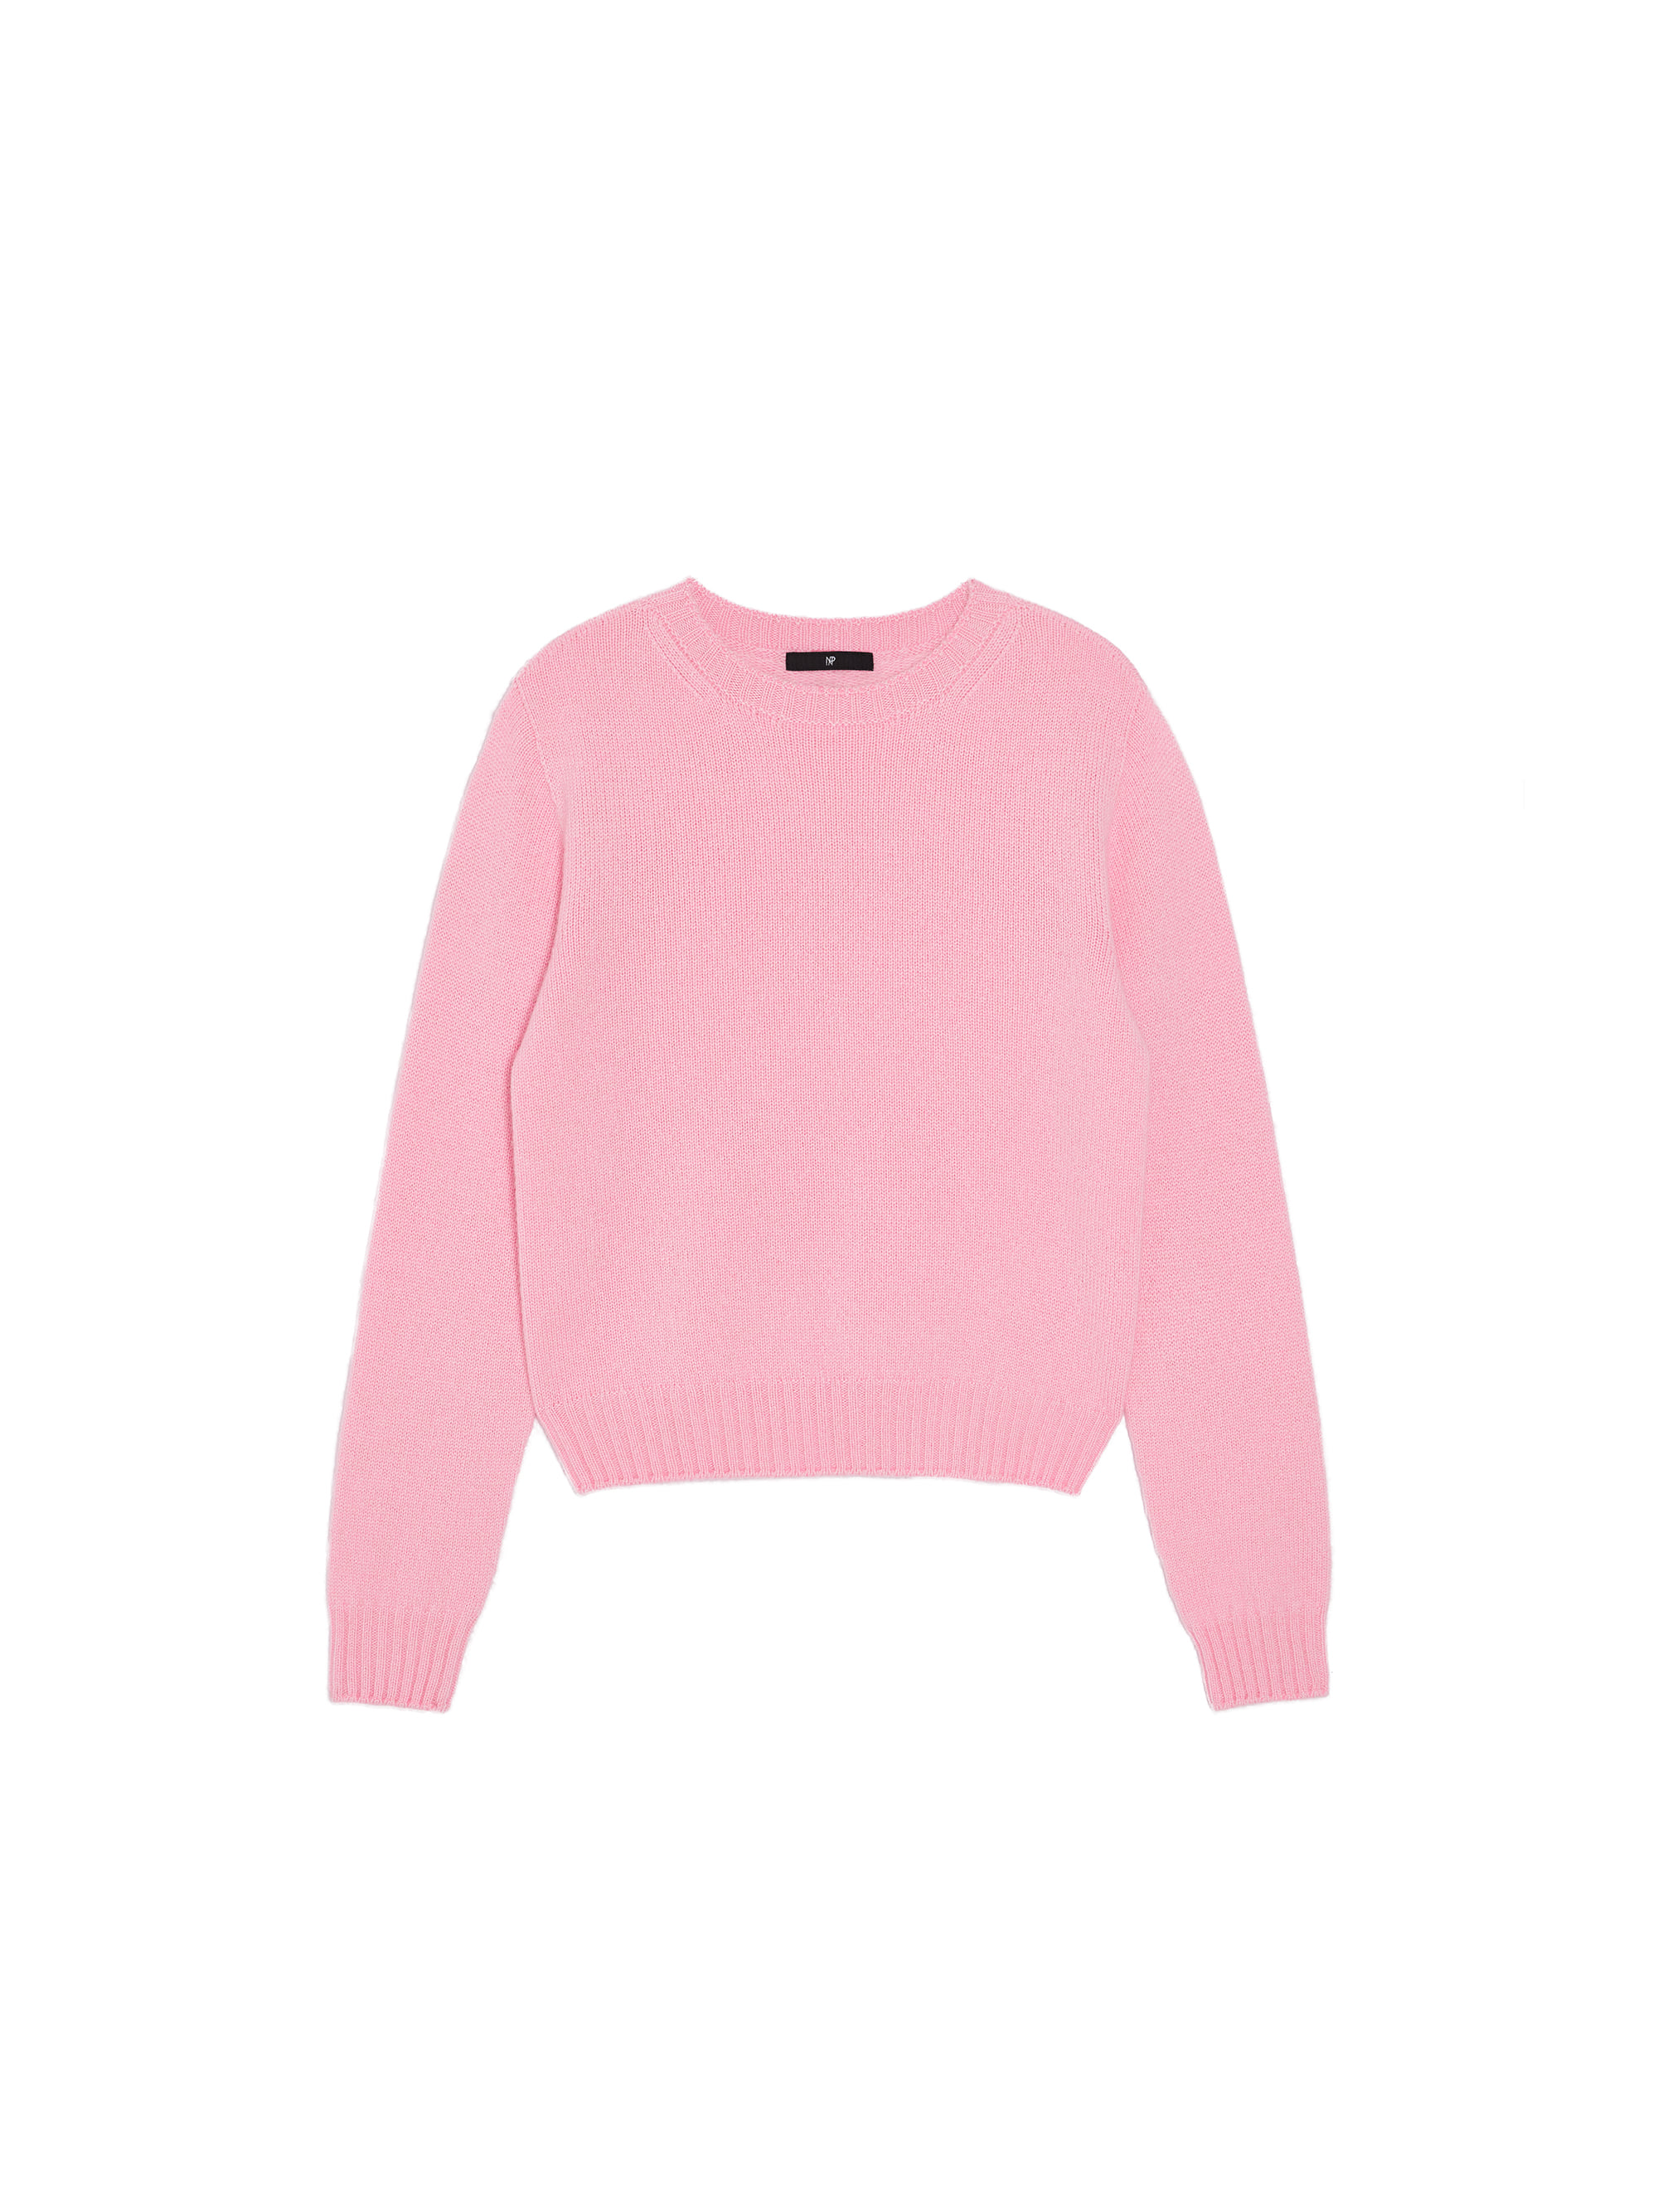 Cashmere Round-neck Sweater / 캐시미어 라운드넥 스웨터